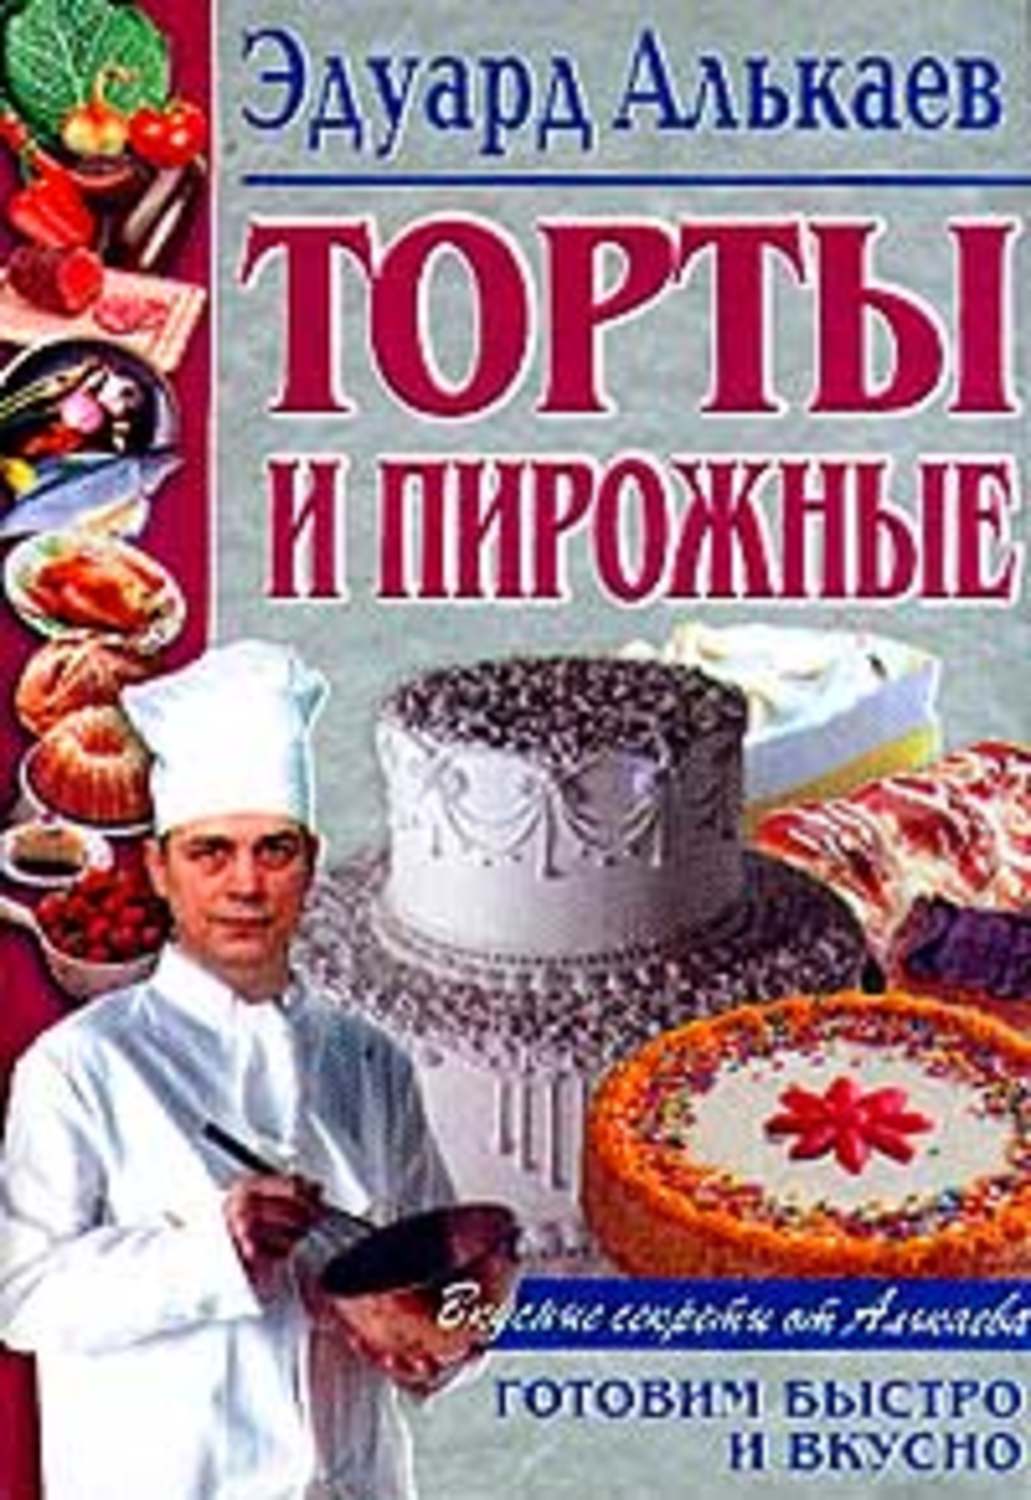 Алькаев Эдуард Николаевич - «Торты и пирожные»